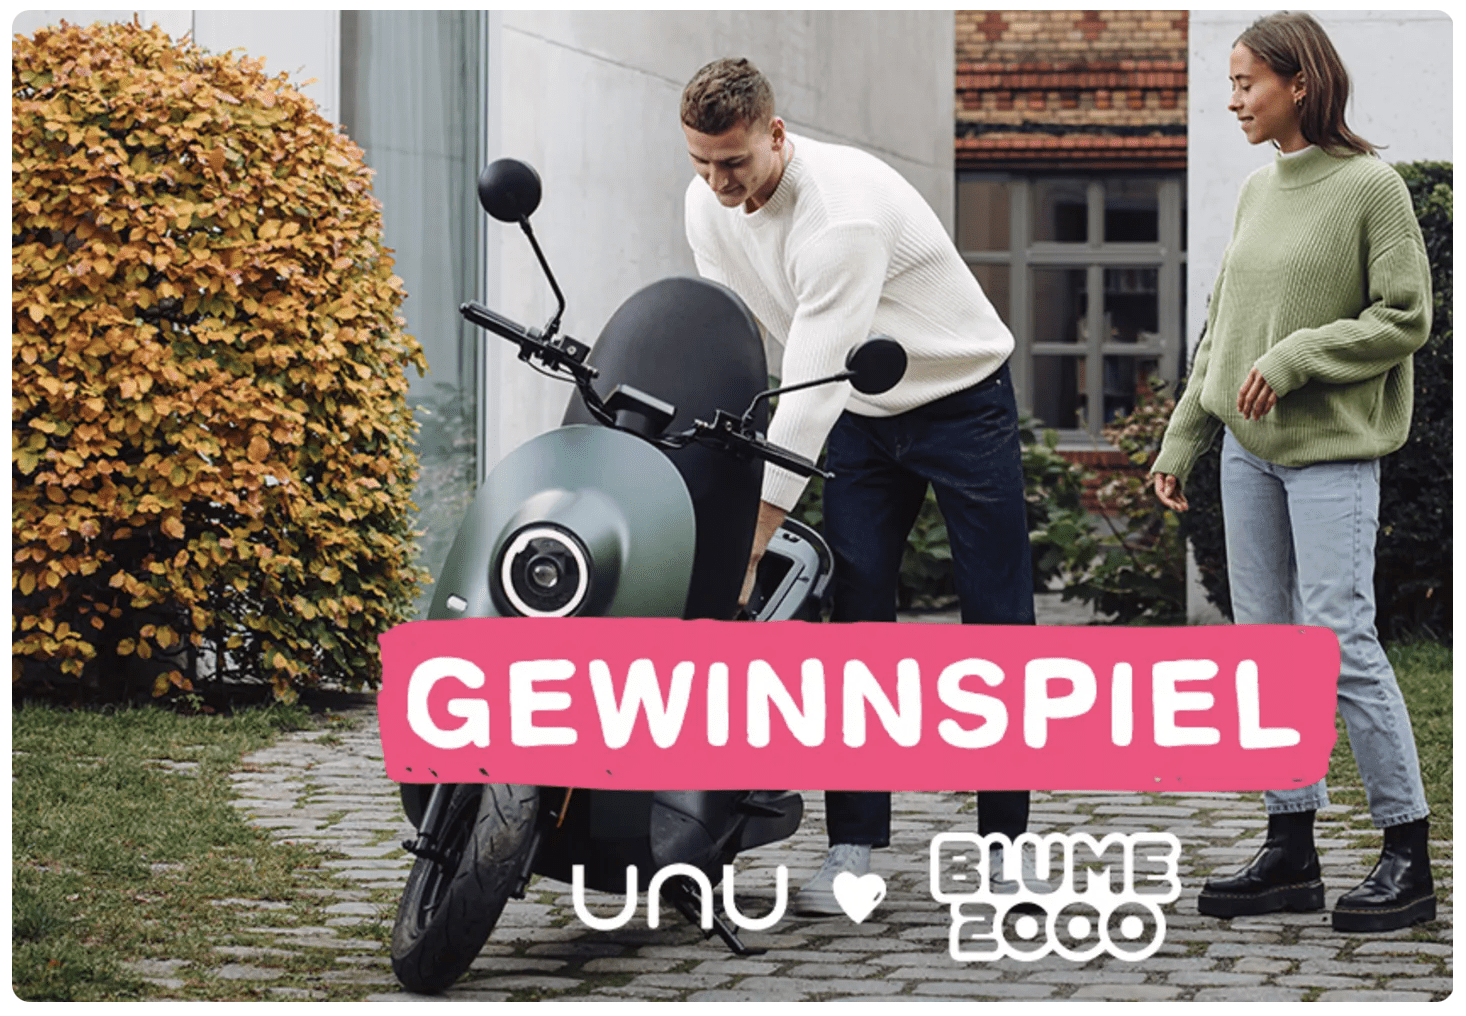 case_Blume2000 Gewinnspiel_E-Motorroller gewinnen